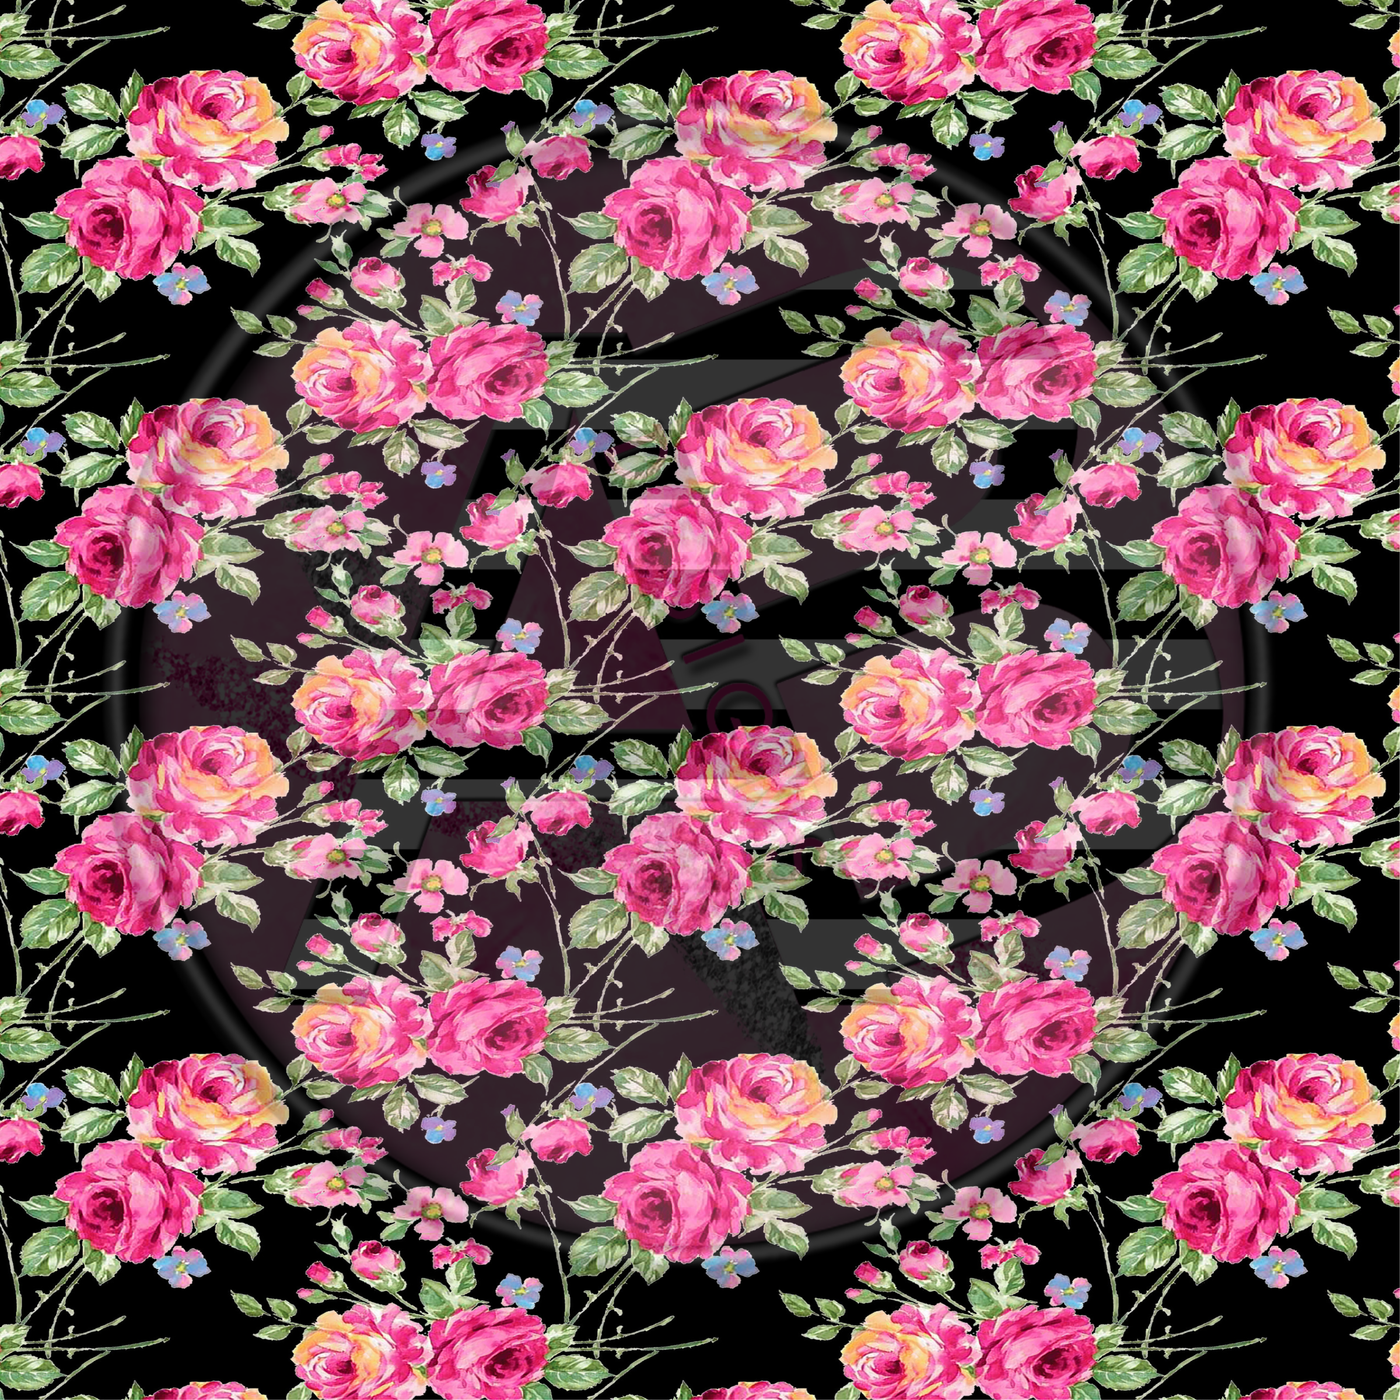 Adhesive Patterned Vinyl - Pink & Black Floral 01